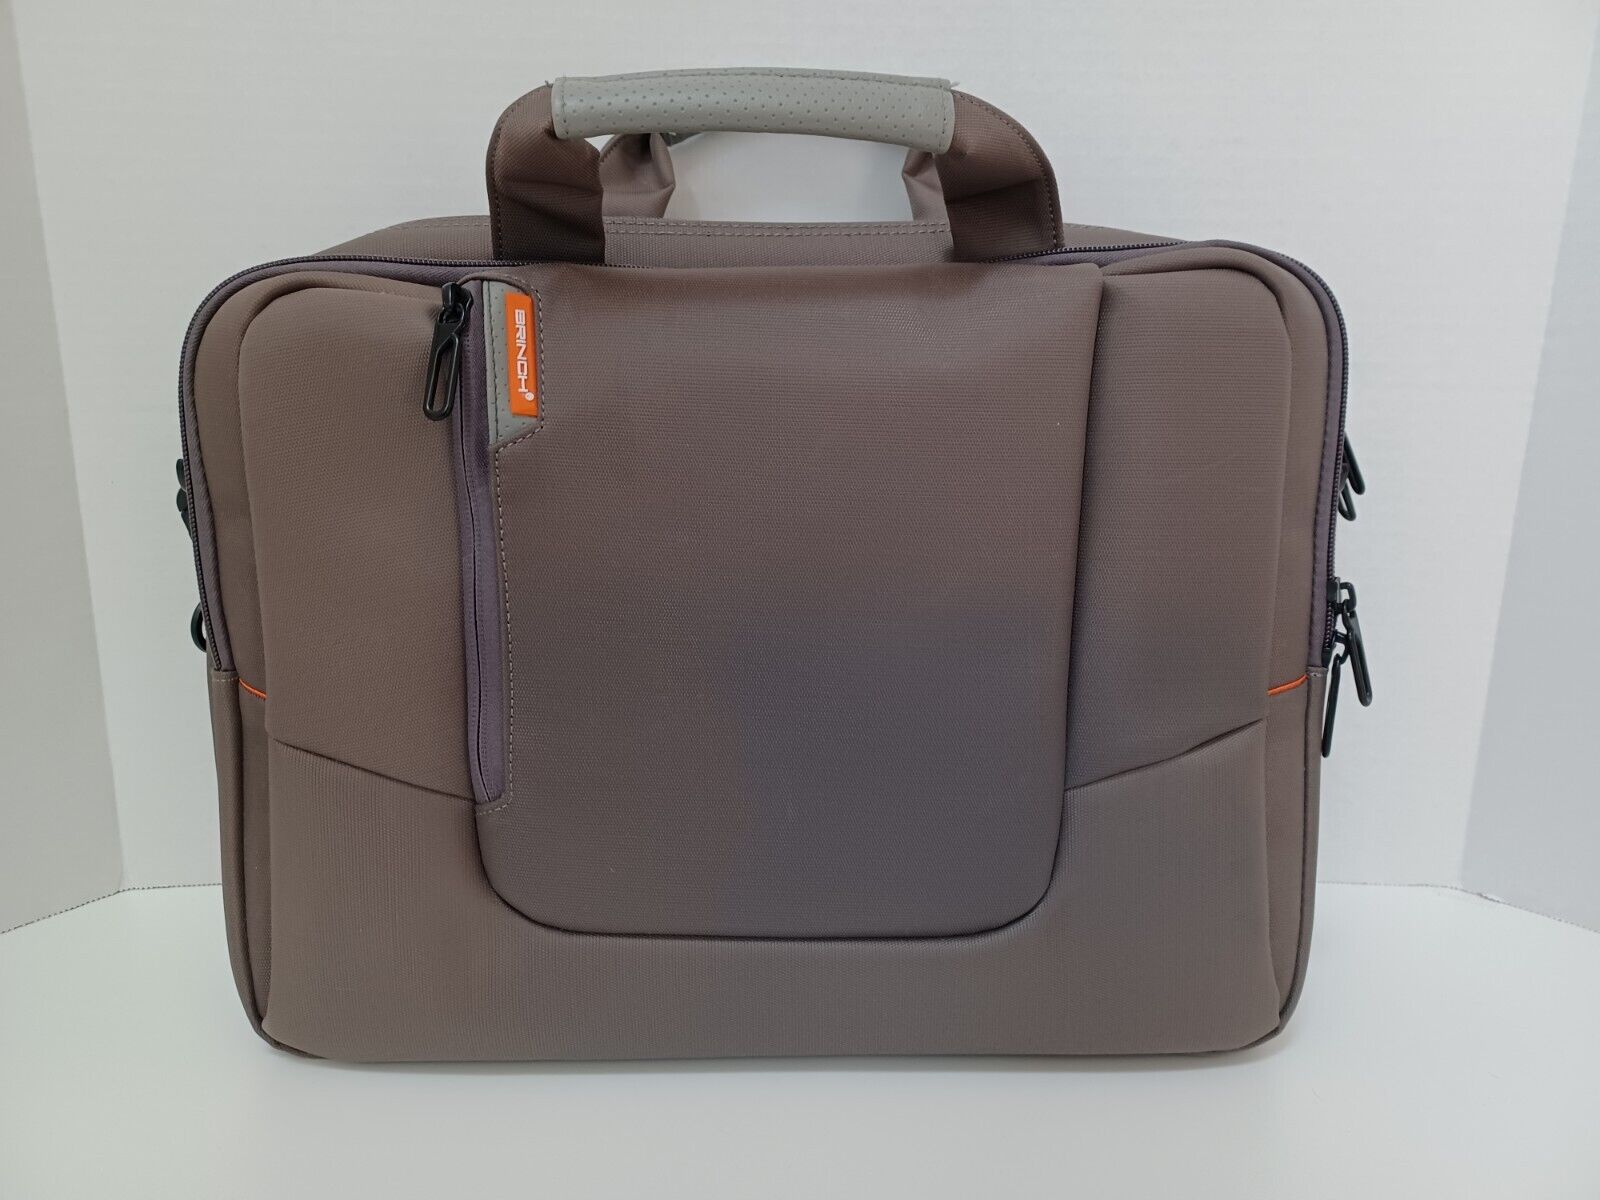 Brinch Laptop Bag Messenger Style Nylon Tan Brown